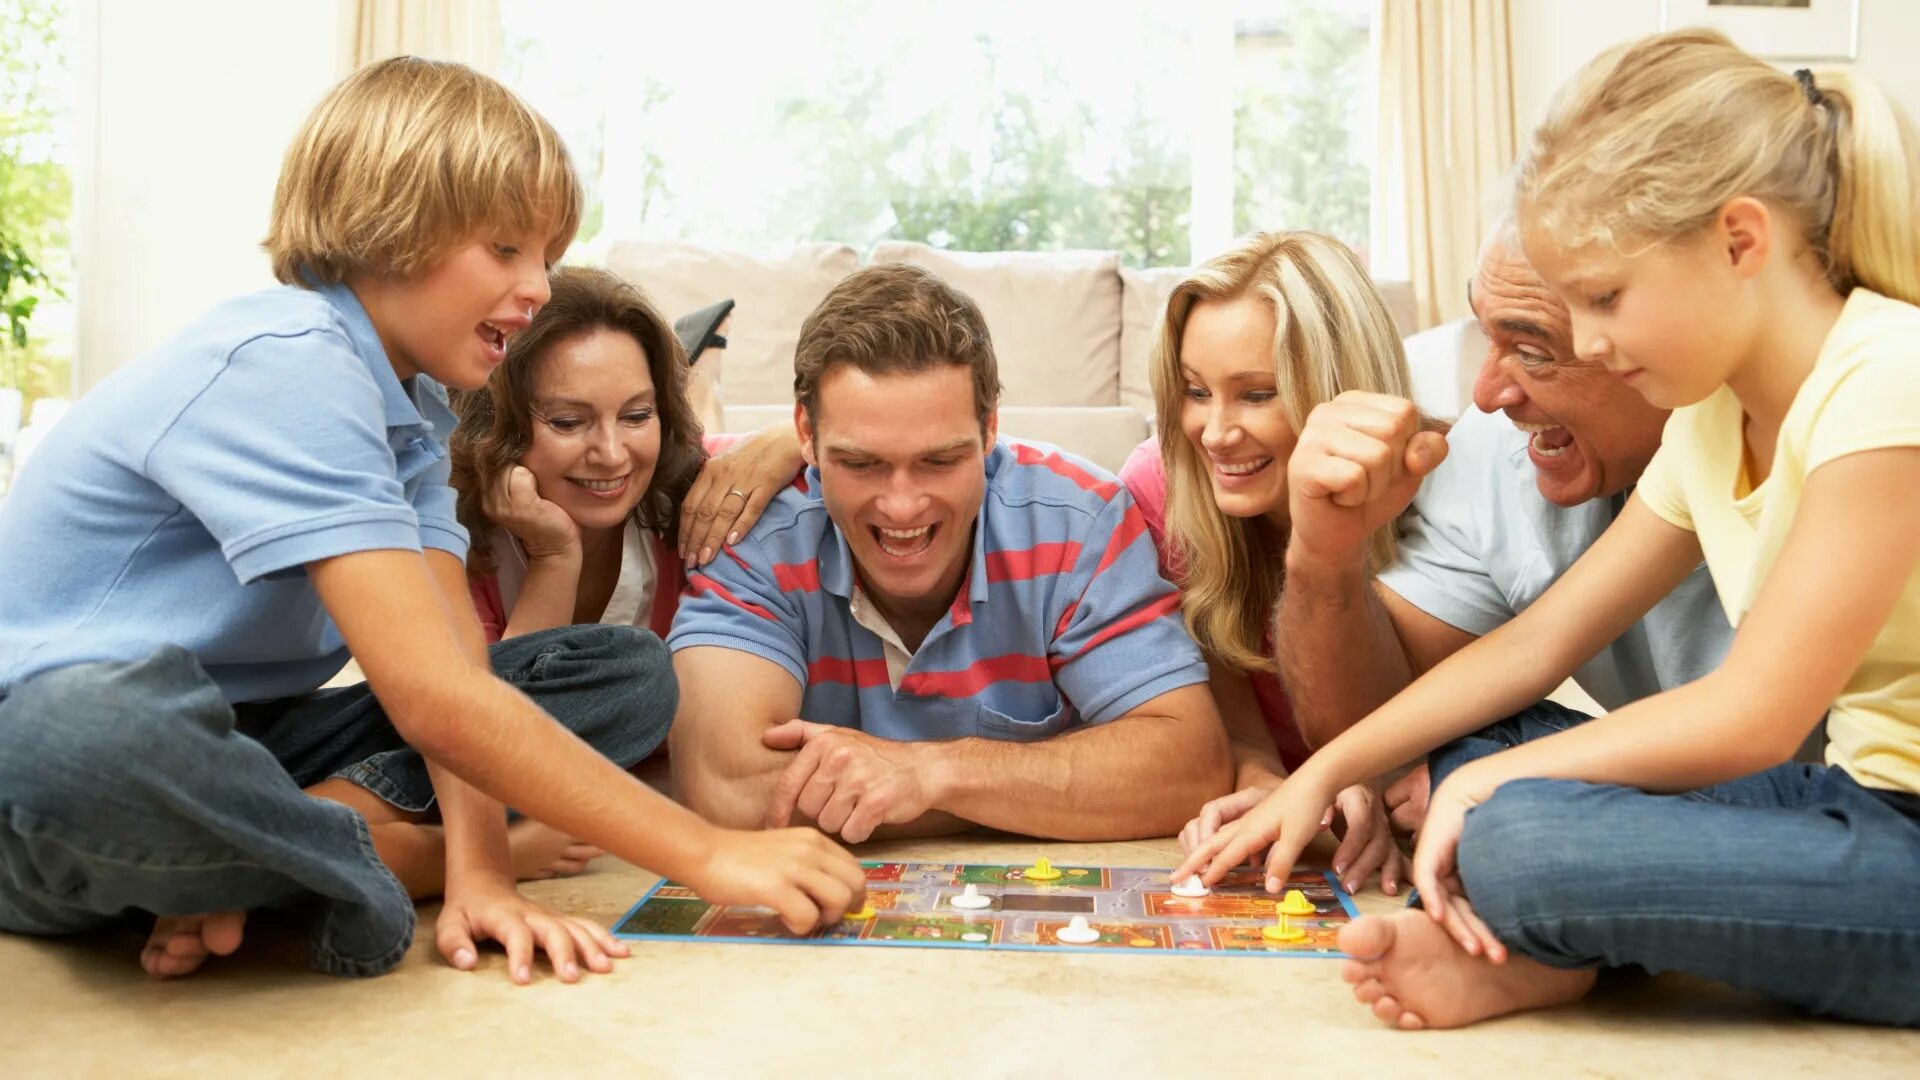 Family games игры. Семейные игры. Семья играет в настольные игры. Общение в семье. Настольная игра «о семье».